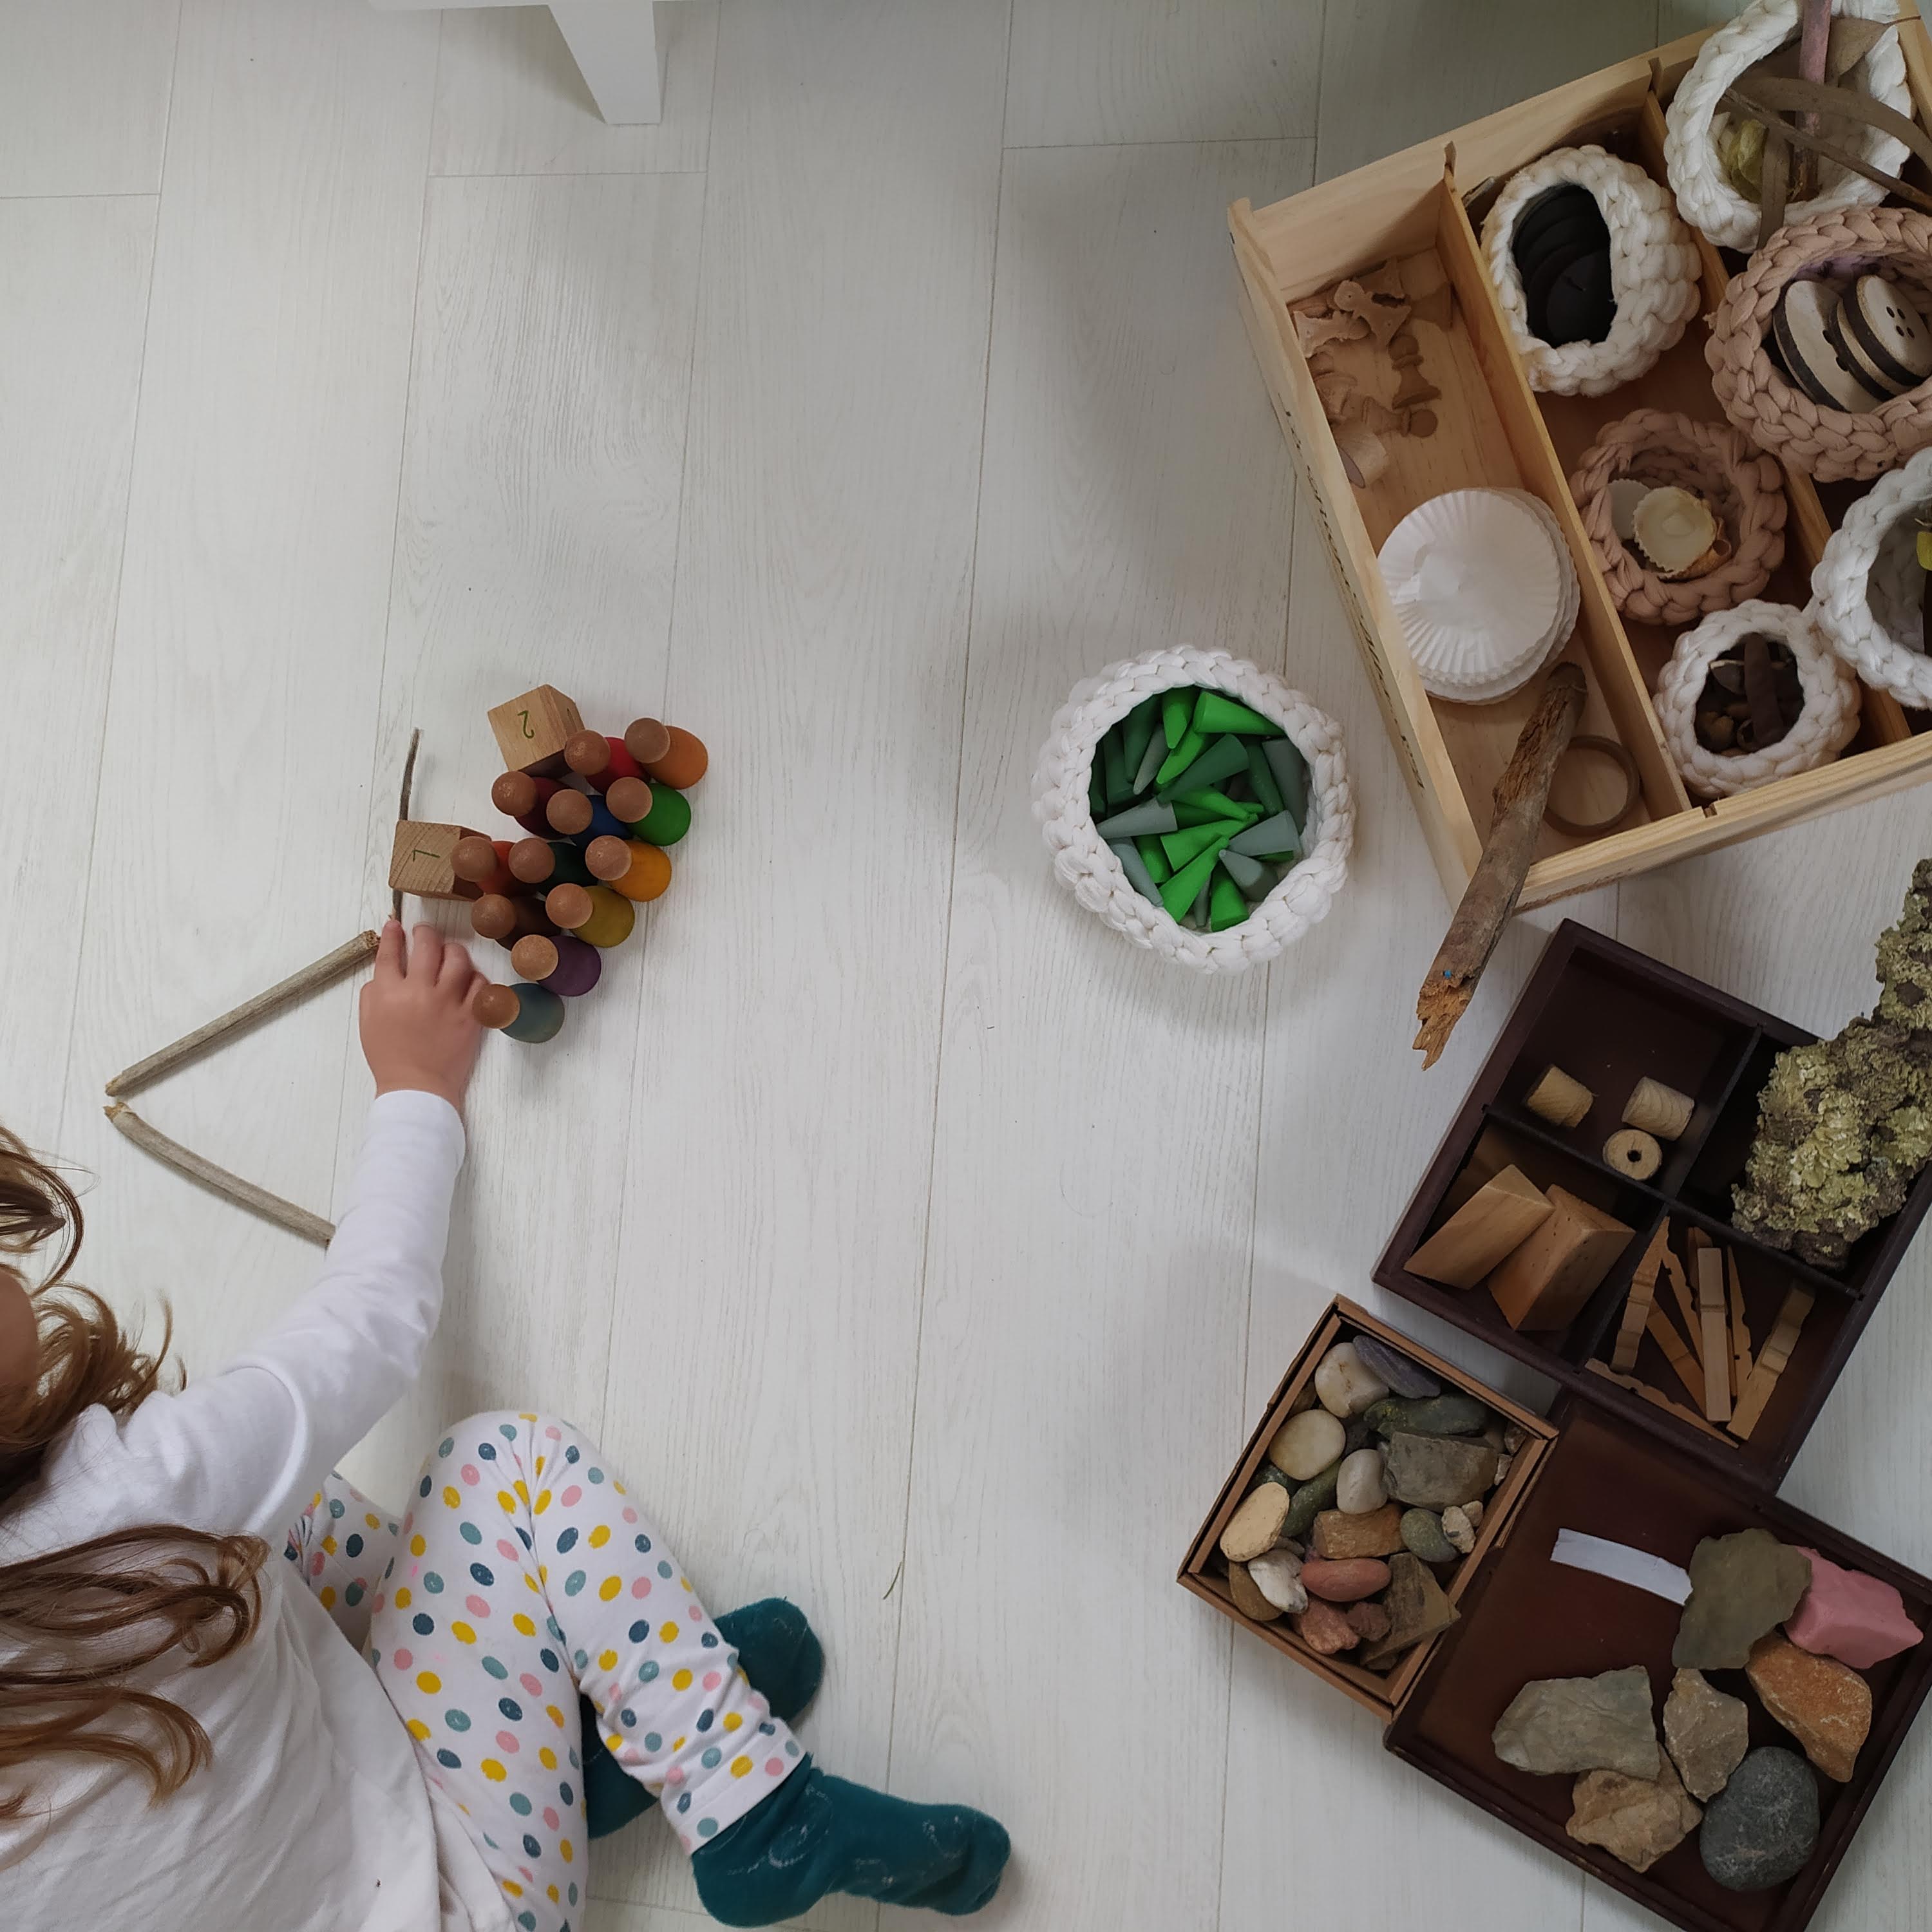 Pedres, botons de fusta, pals, nins, cons, retalls de fusta, escorça d'arbre... elements naturals classificats en cistells i una nena jugant